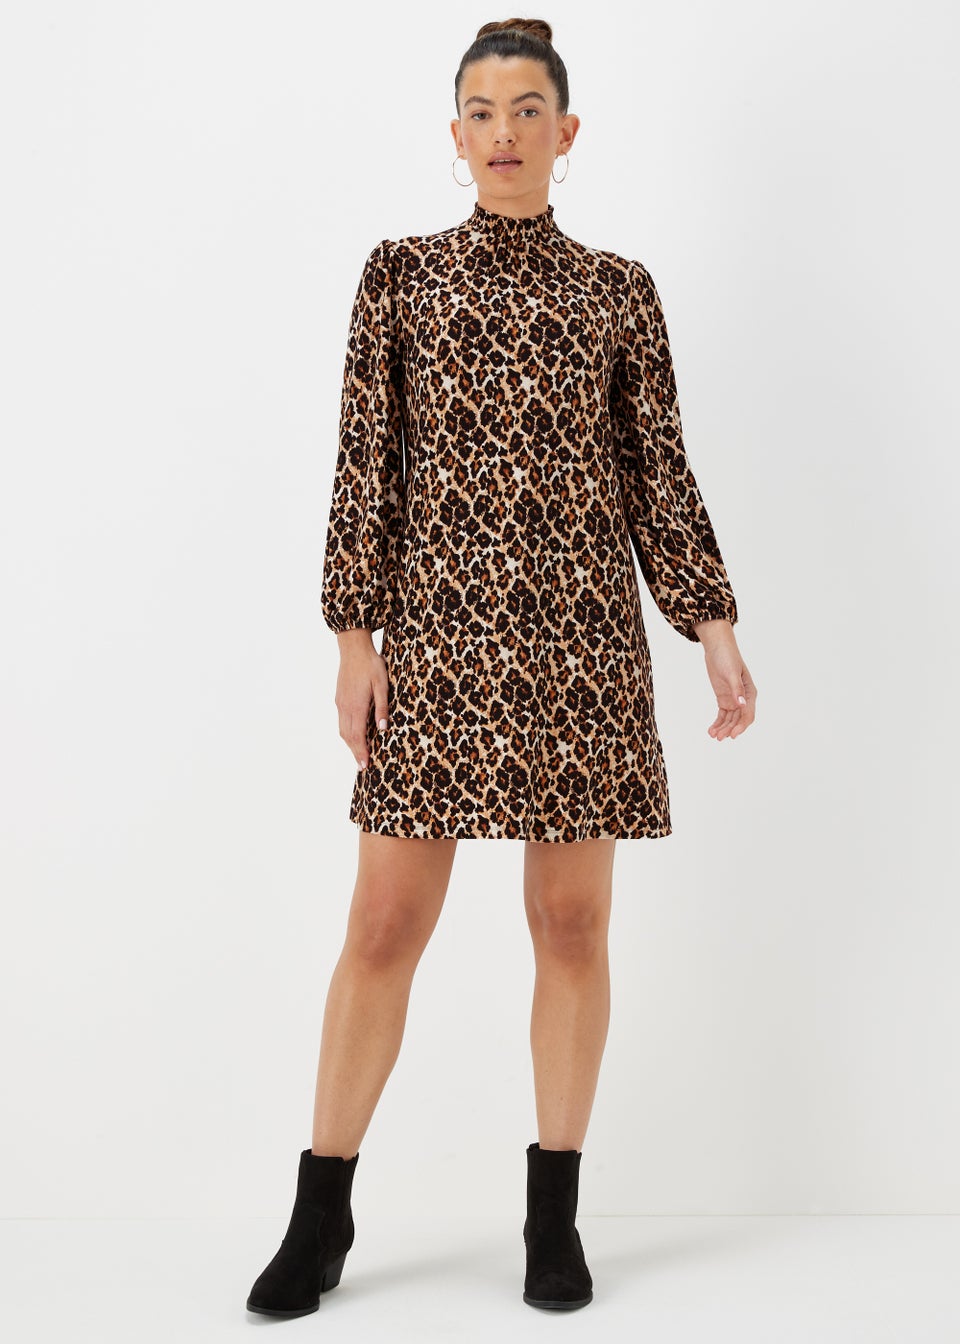 Stone Leopard Print Mini Dress